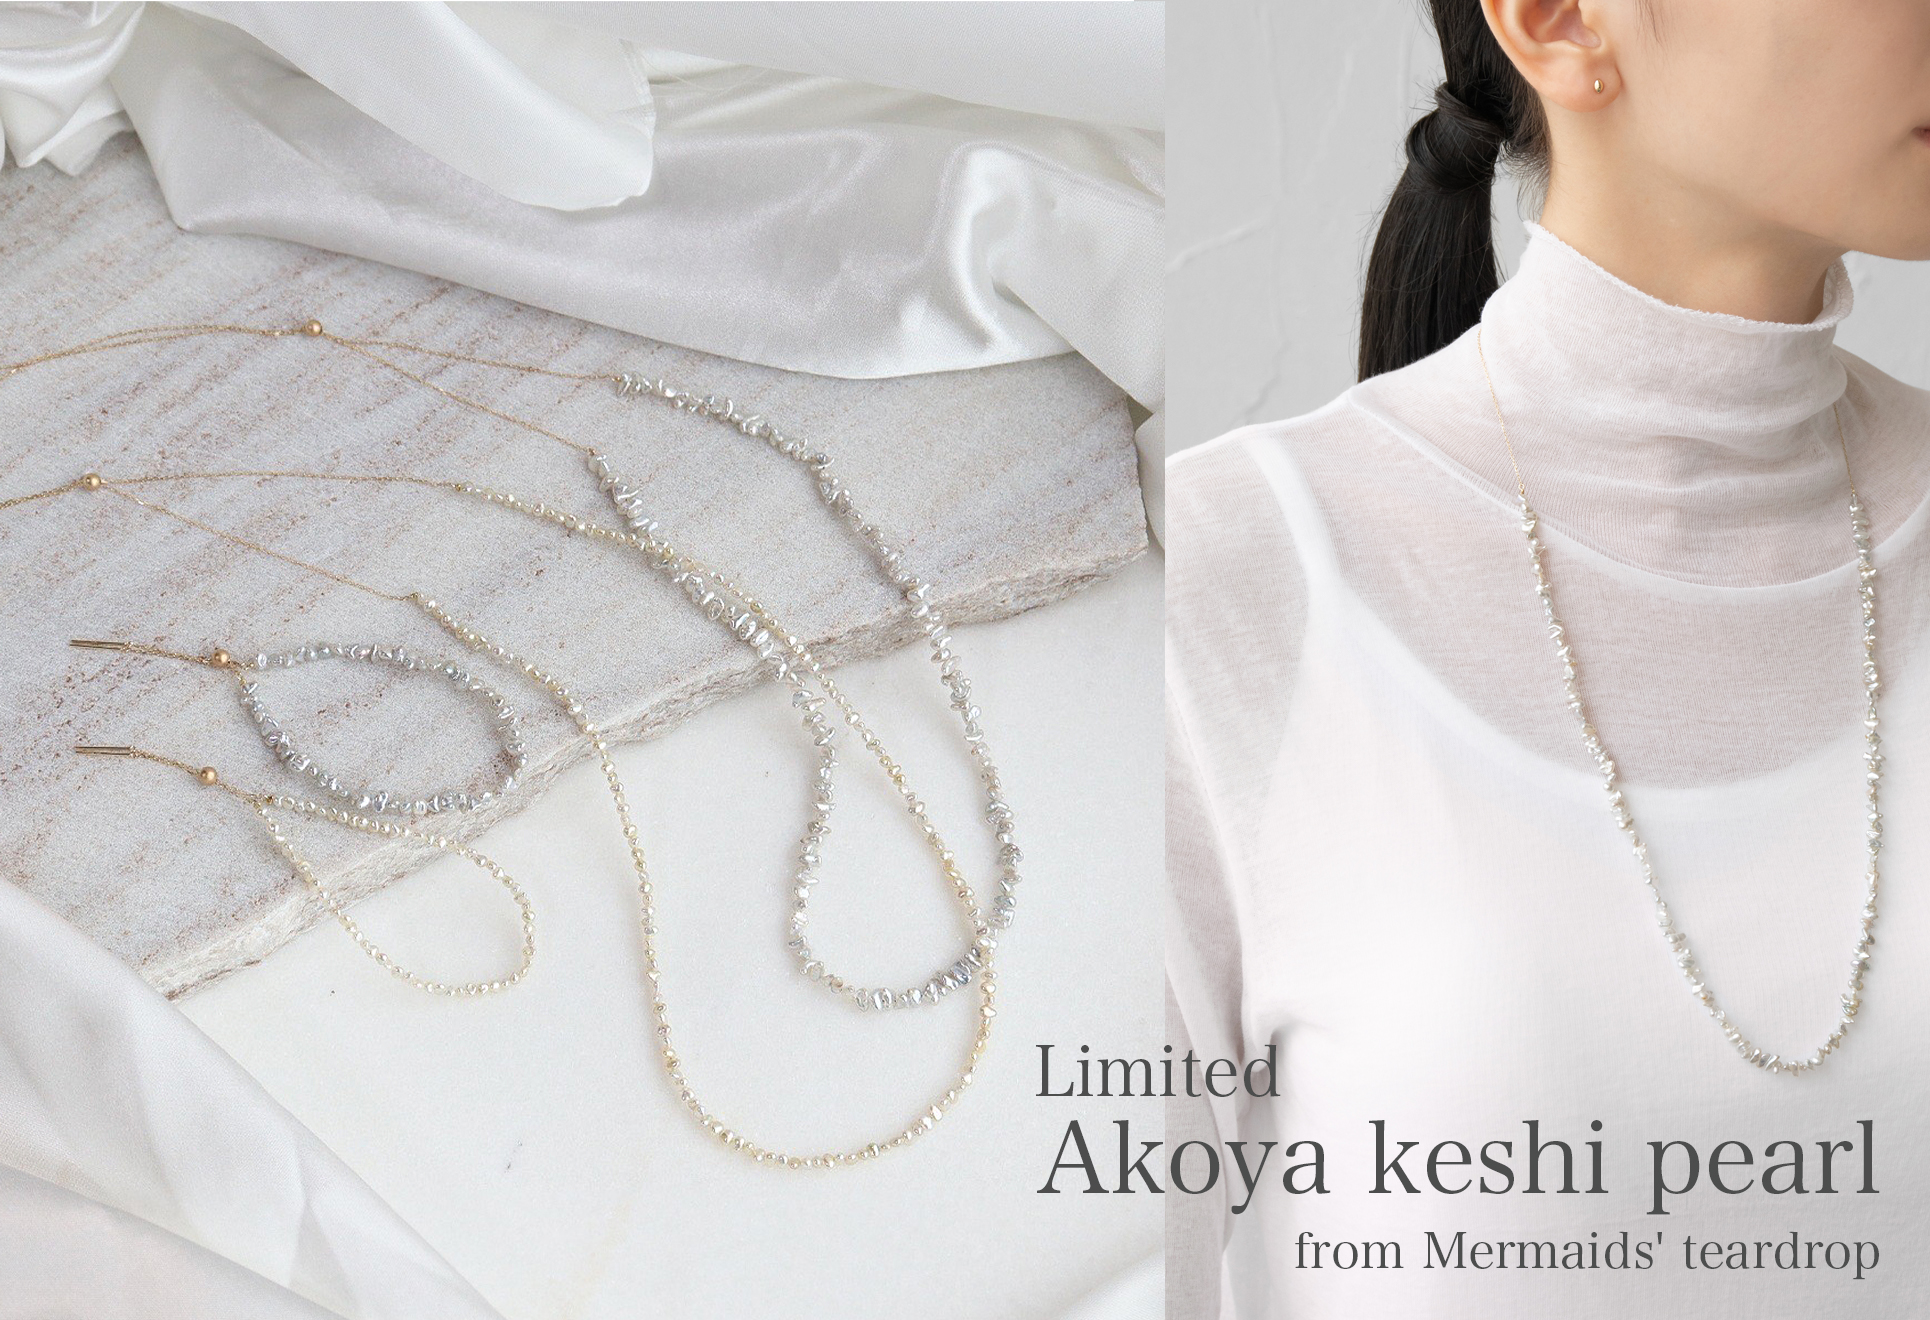 【Limited】Akoya keshi pearl